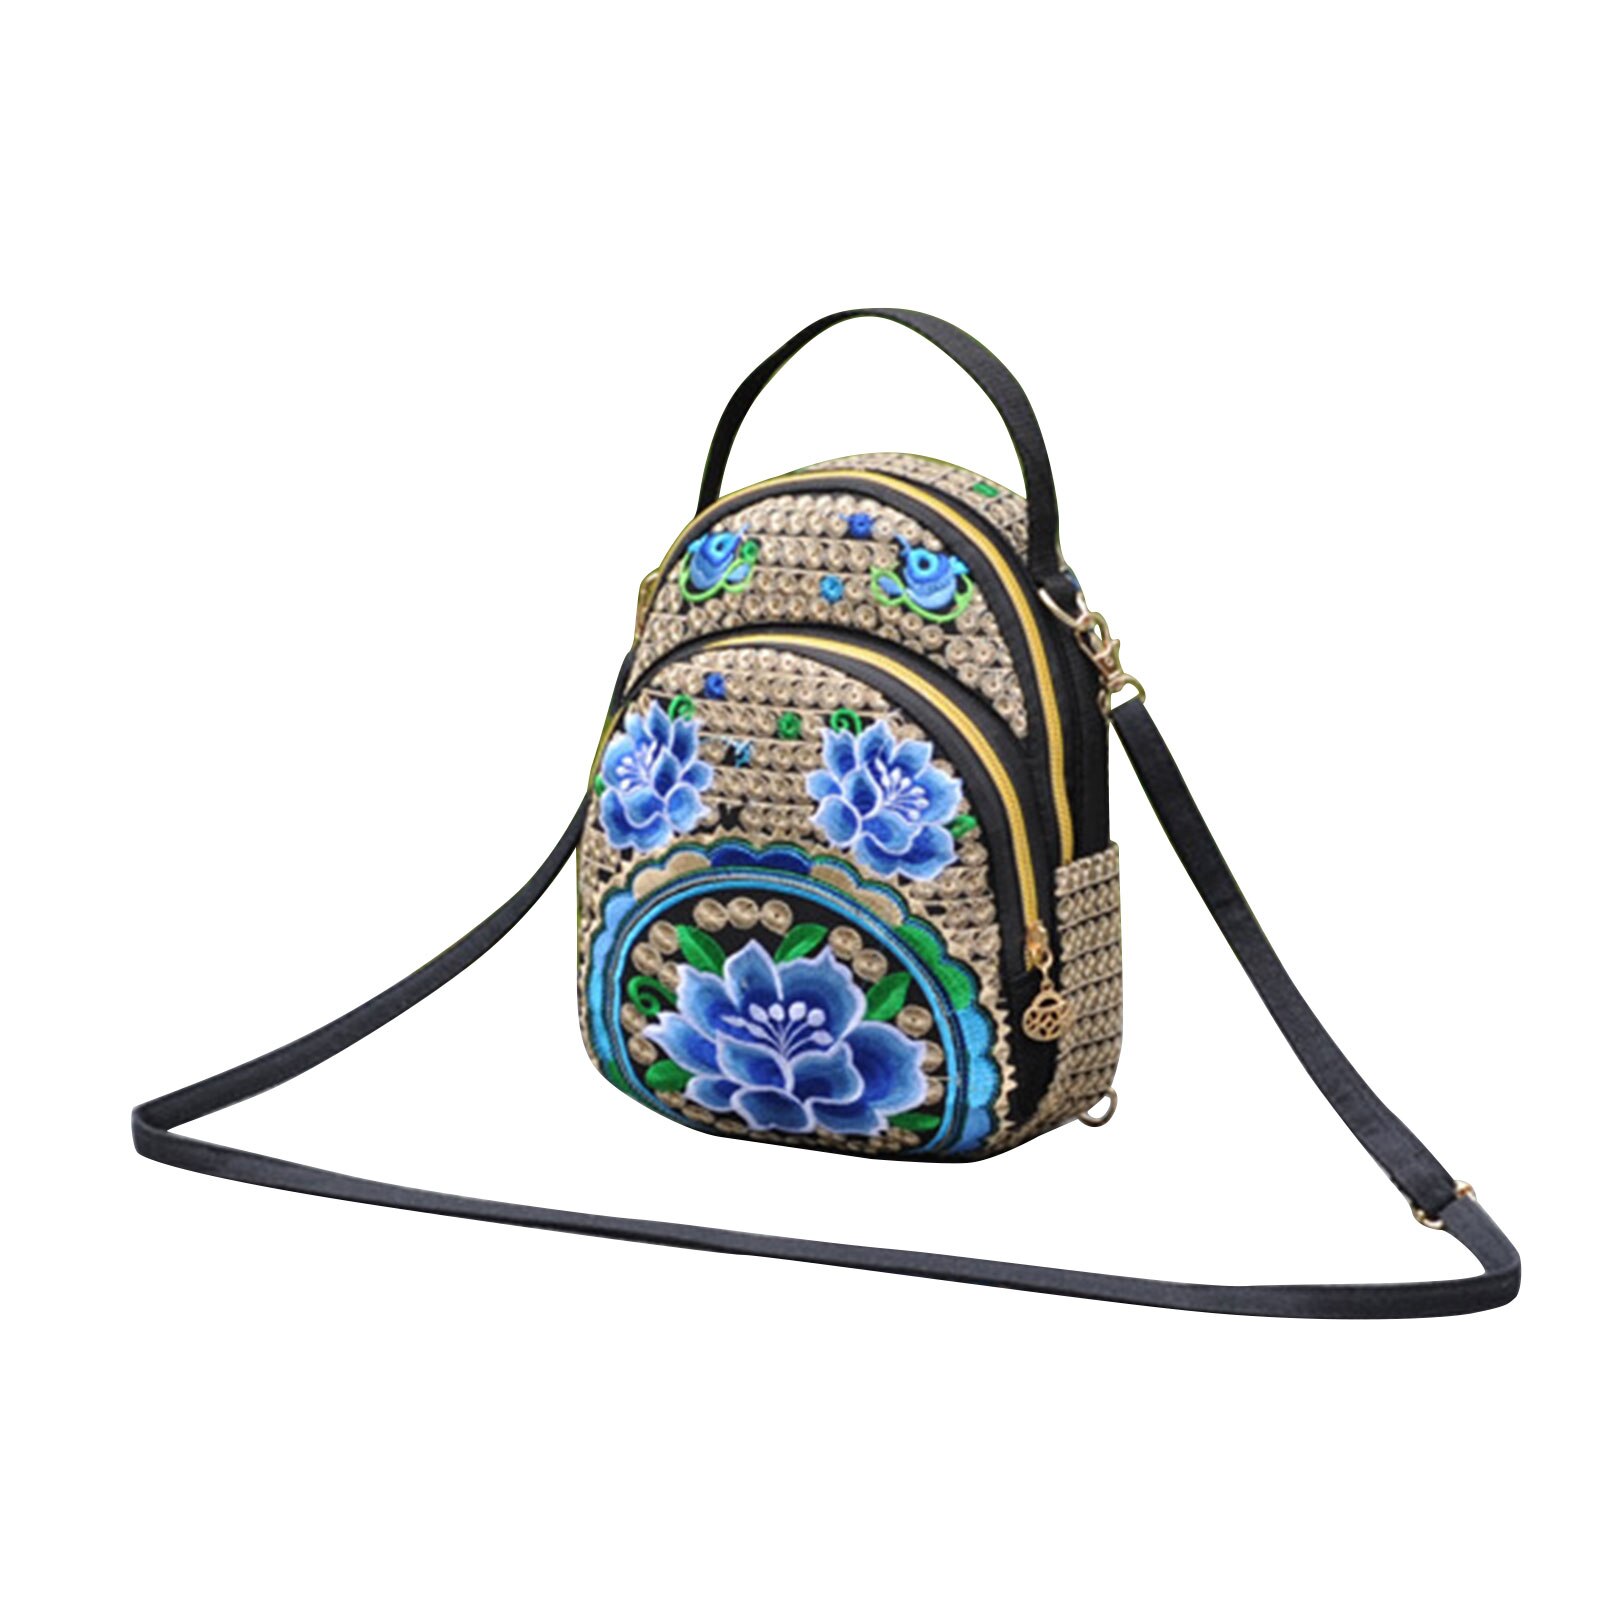 Kvinder pige vintage mini rygsæk lærred broderet blomst lynlås rejse skulder taske dagsæk til rejse shopping: B